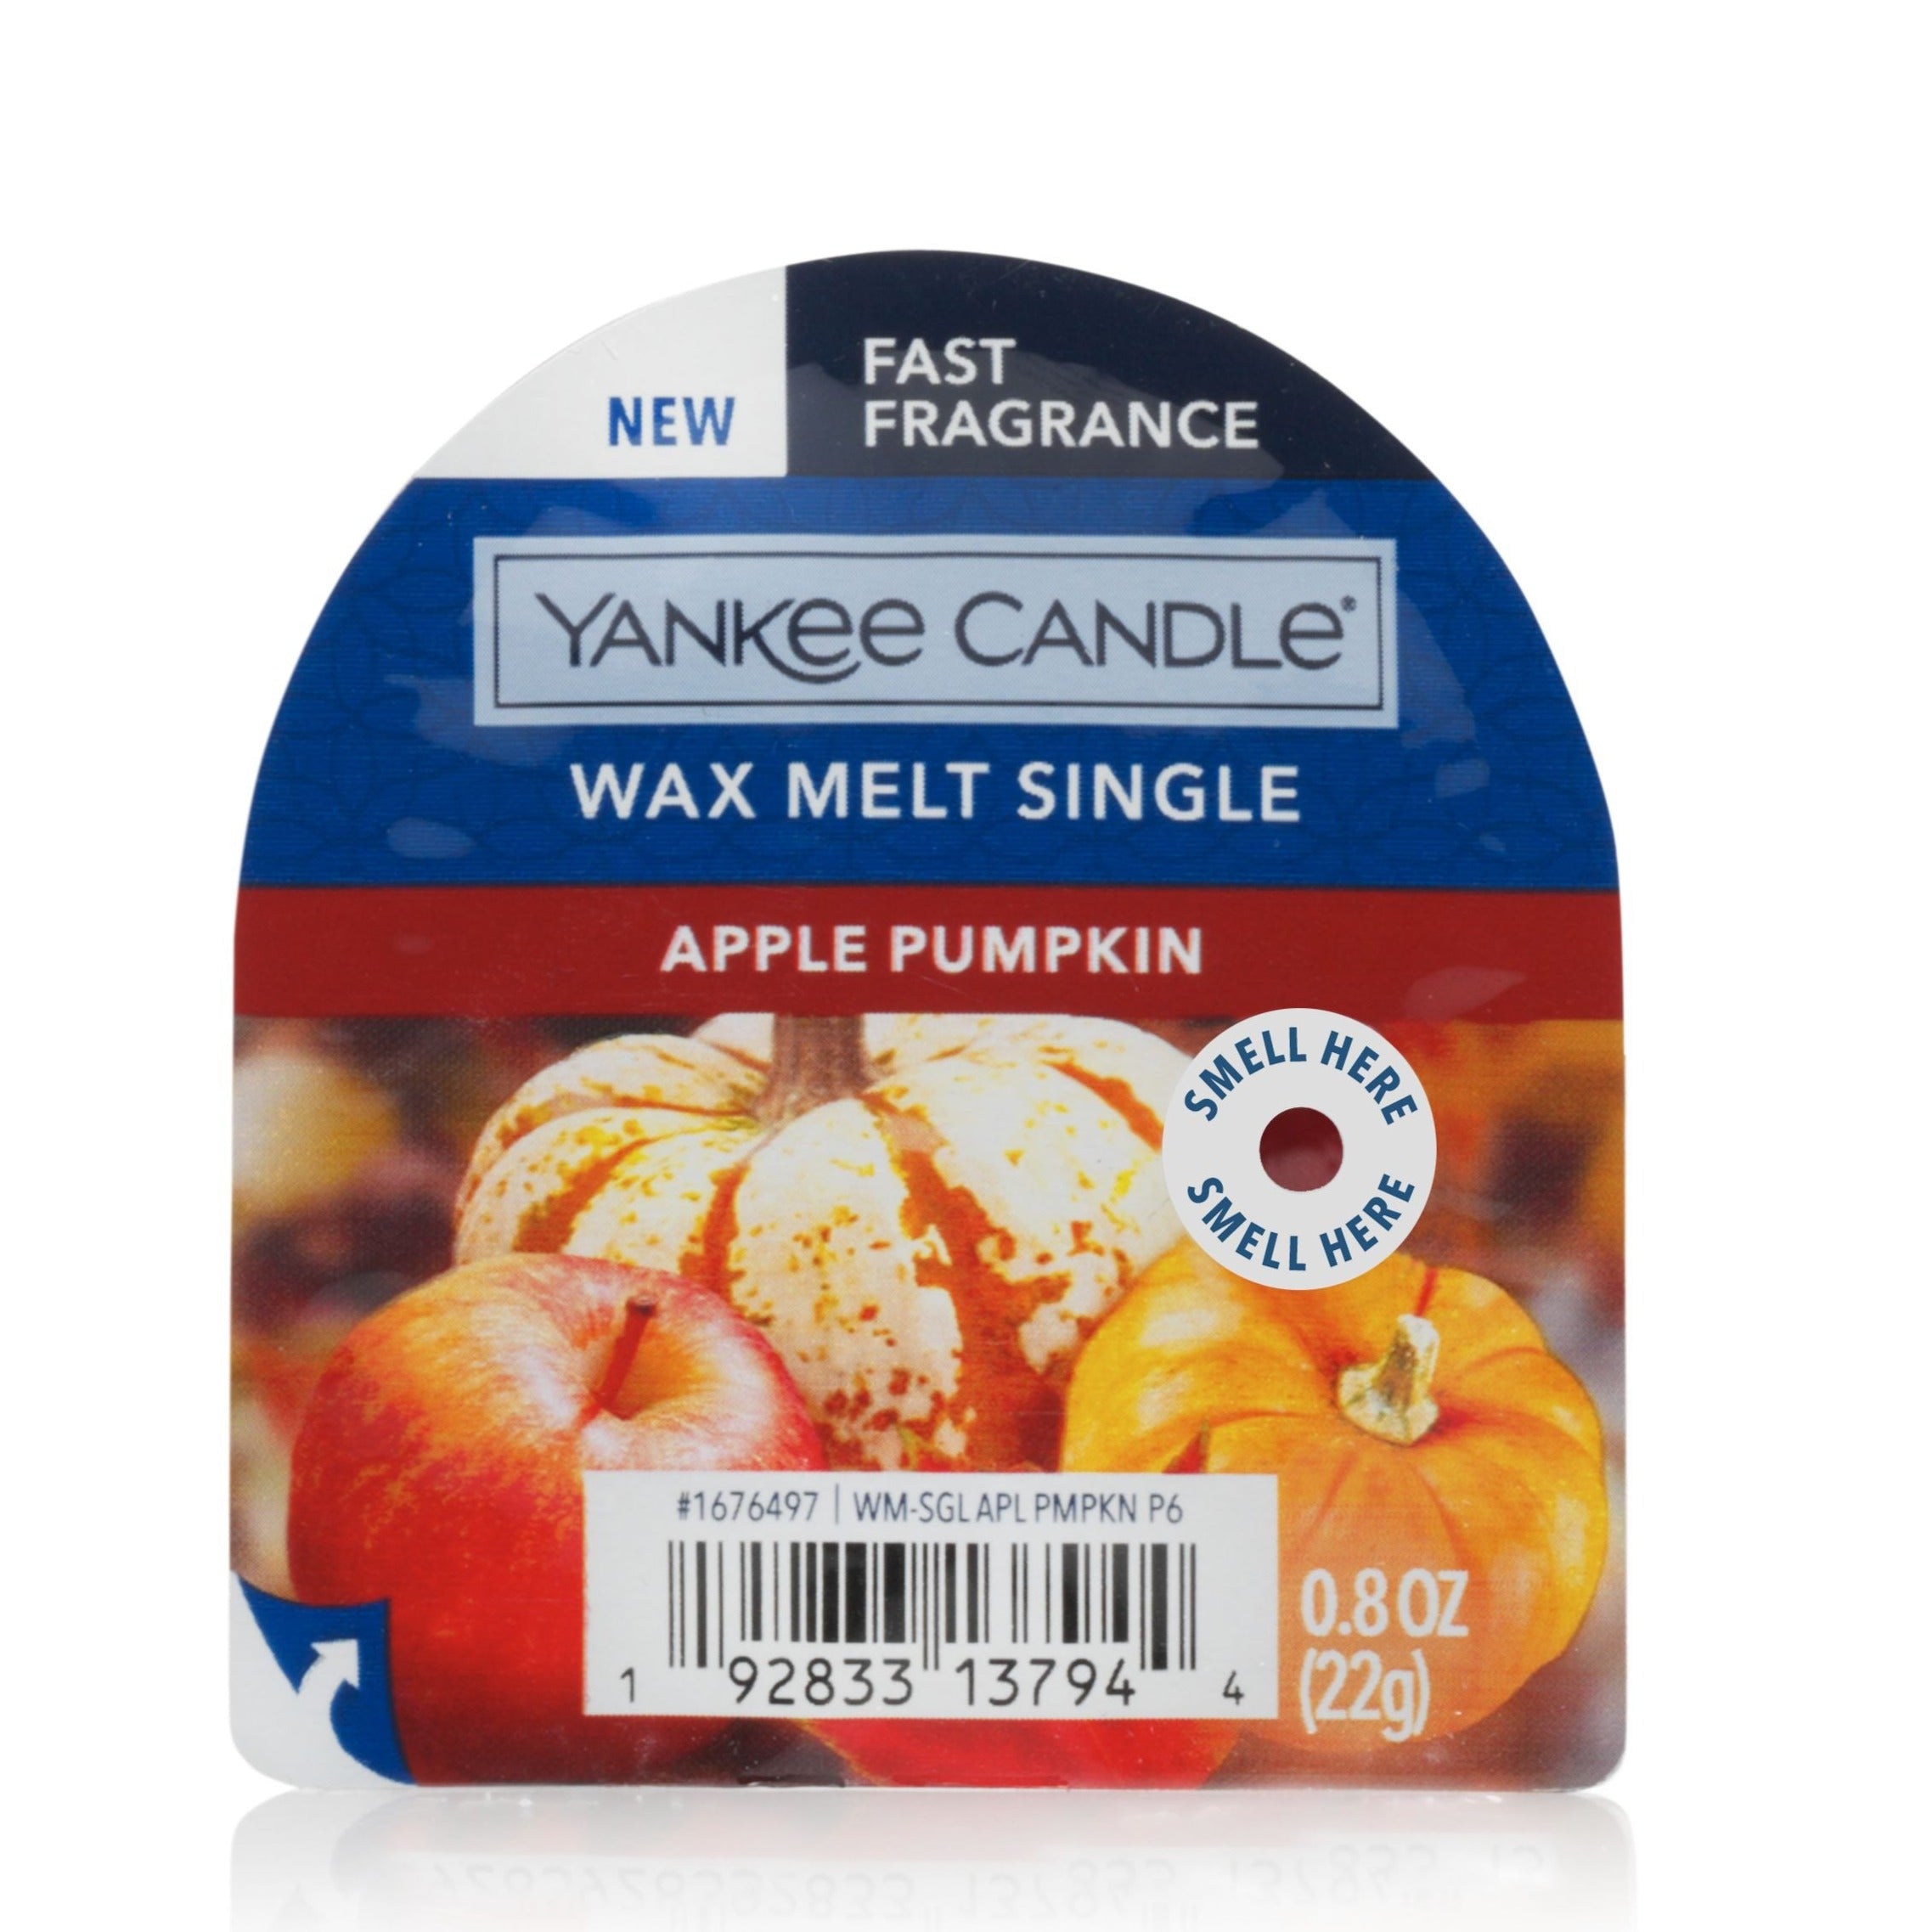 Apple Pumpkin Wax Melt Single